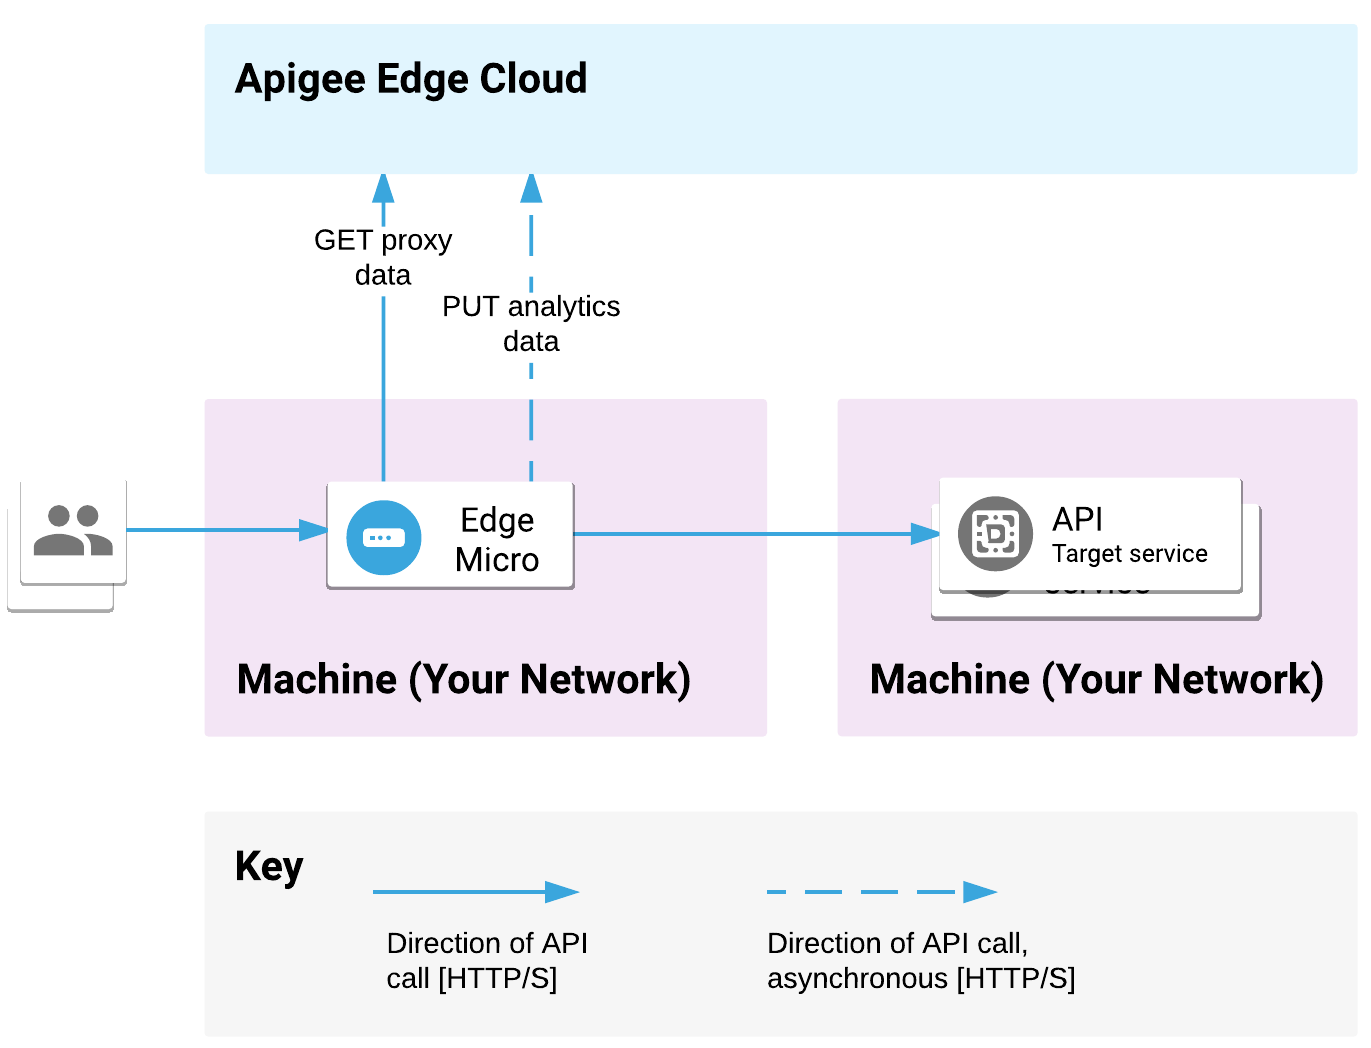 系統會將 Edge Microgateway 用於某部機器，並將後端服務部署在另一個位置。API 要求會由微閘道處理，且系統會將要求傳送至後端目標。Microgateway 能夠與 Apigee Edge Cloud 通訊 Proxy 和數據分析資料。